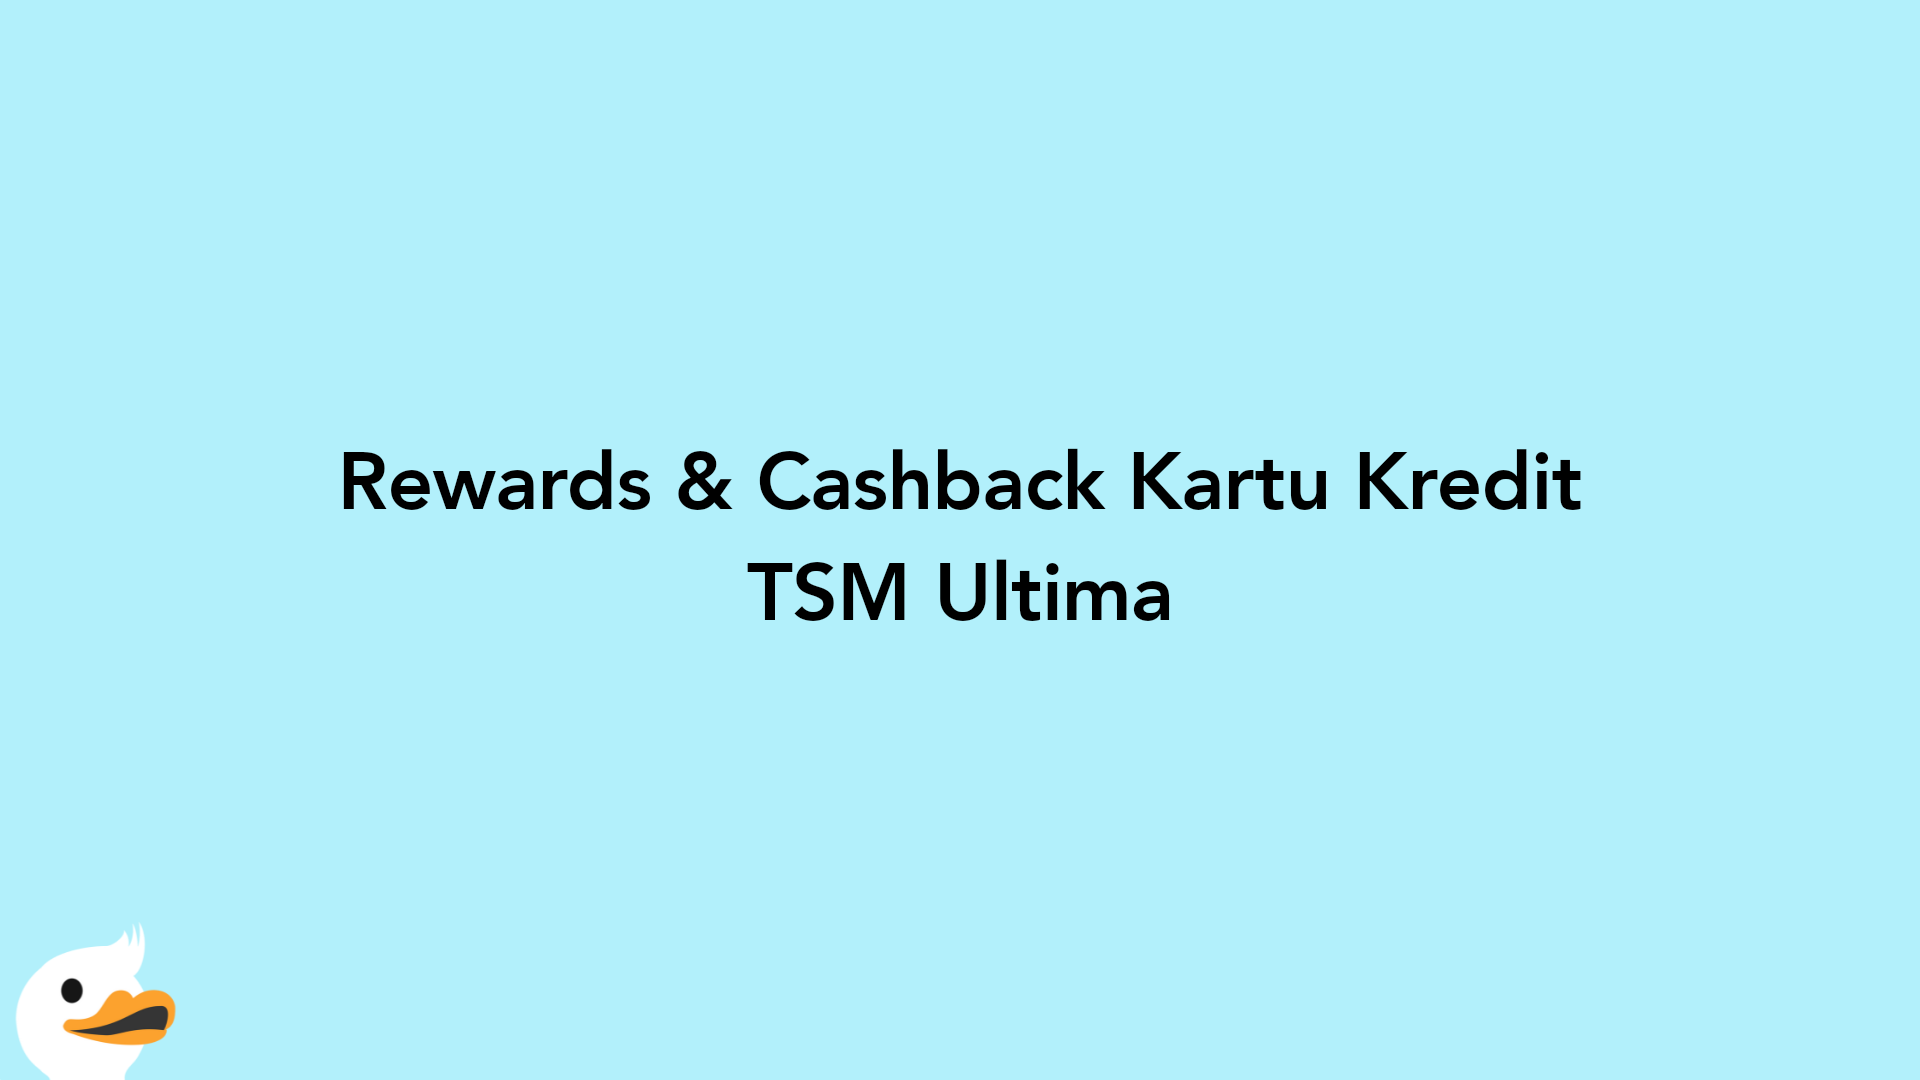 Rewards & Cashback Kartu Kredit TSM Ultima